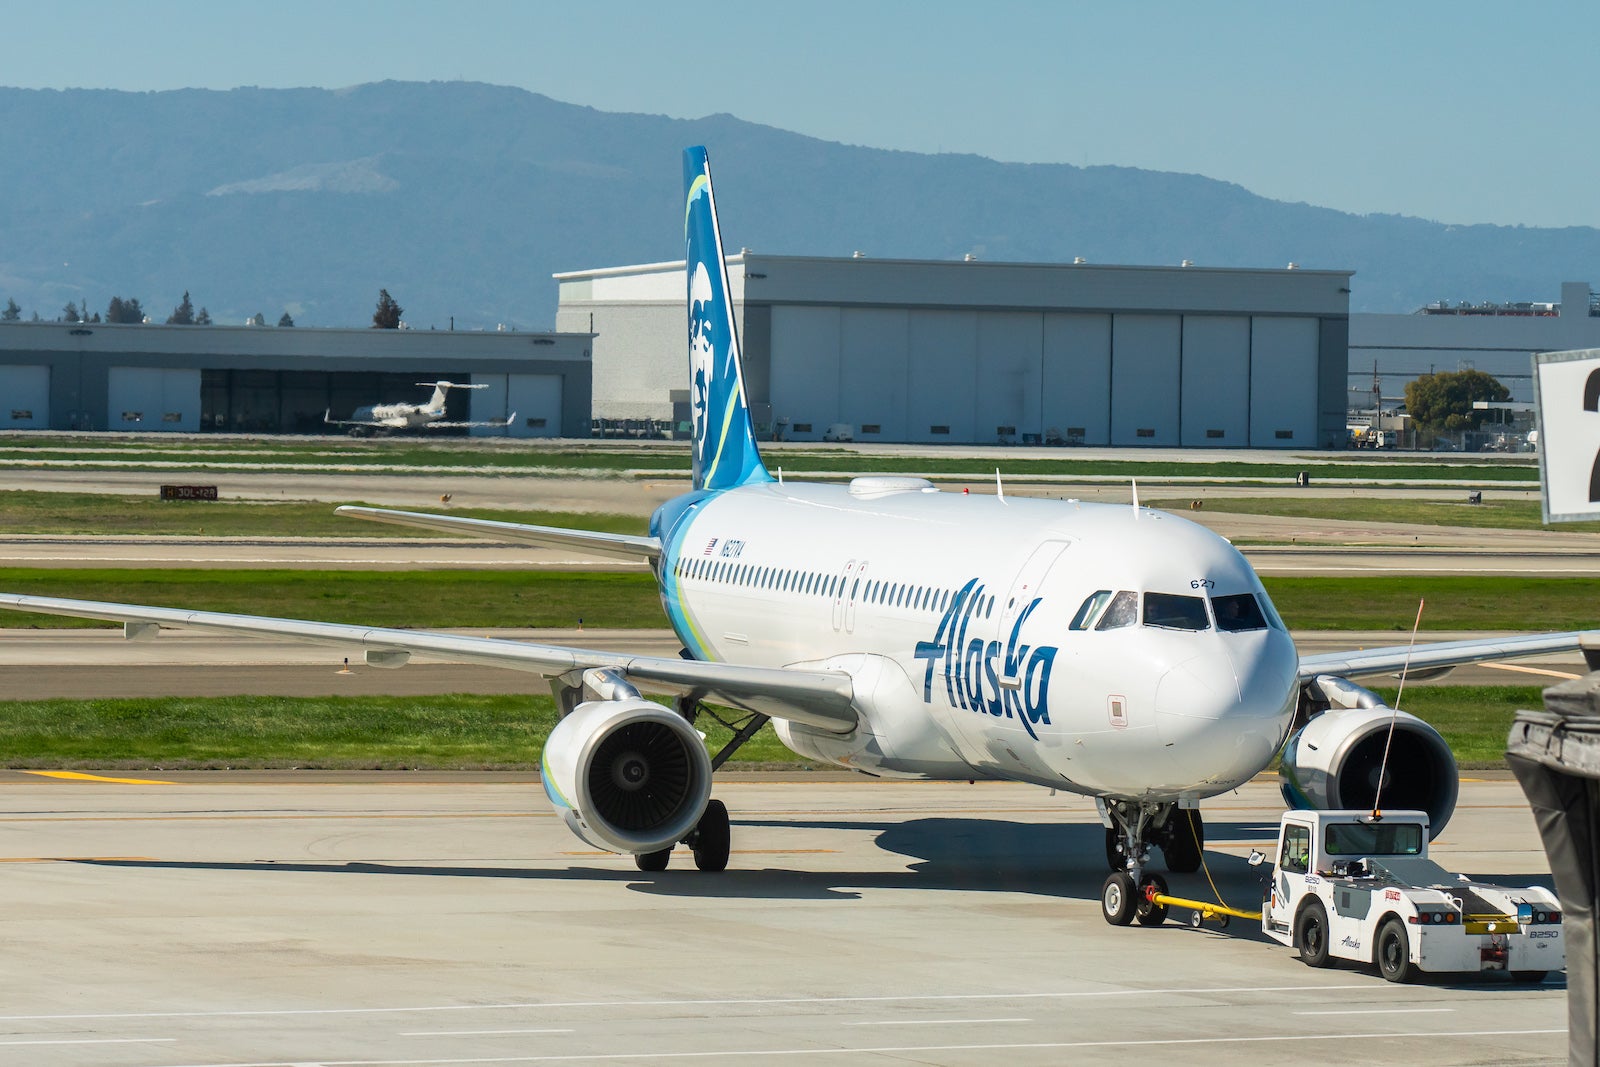 Alaska Airlines Airbus Jet at San Jose Airport